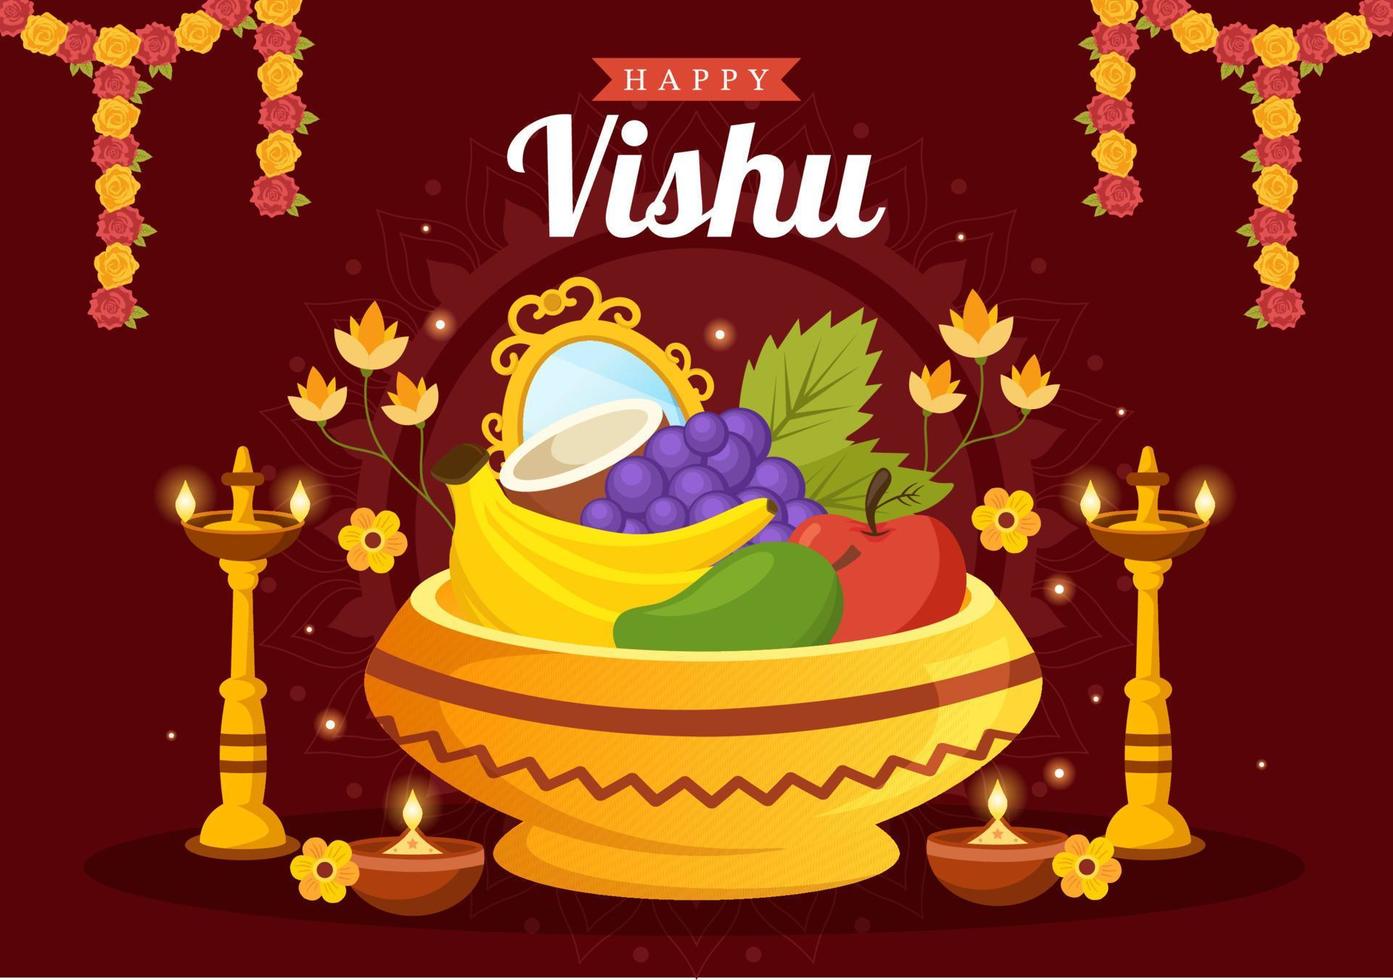 contento vishu festival ilustración con tradicional kerala kani, frutas y vegetales para aterrizaje página en plano dibujos animados mano dibujado plantillas vector